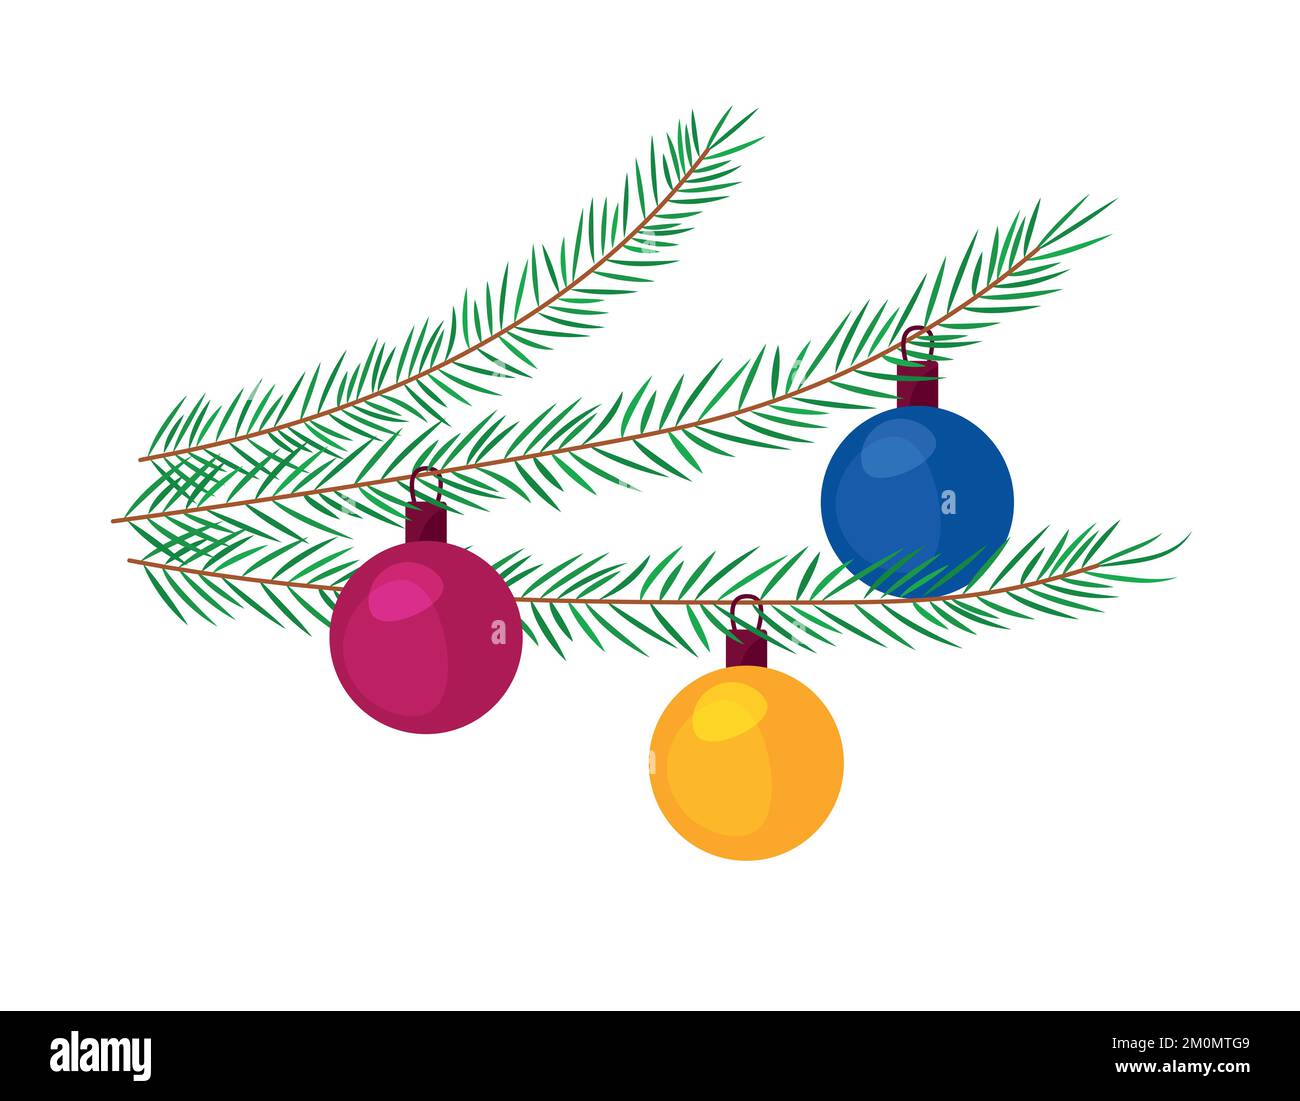 Décorations pour arbres de Noël. Boules colorées sur branches de sapin. Illustration vectorielle isolée sur fond blanc. Elément pour conceptions Xmas, gre Illustration de Vecteur